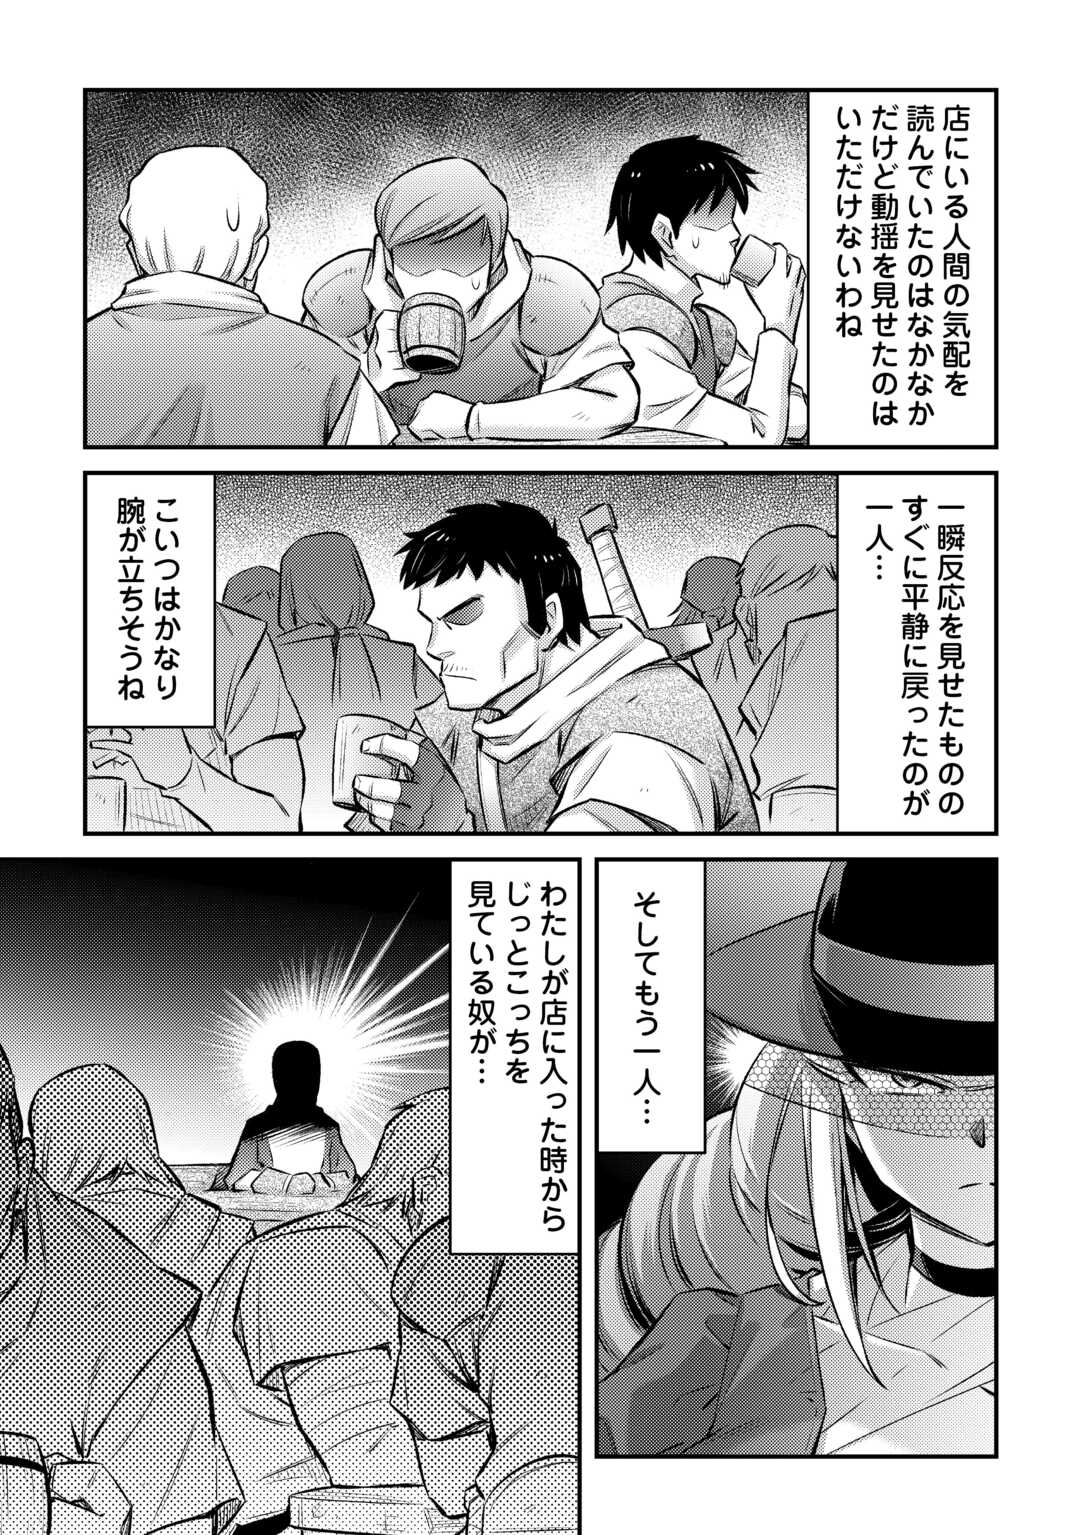 Makikomare Shoukan! Soshite Watashi wa “Kami” Deshita?? - Chapter 38 - Page 2